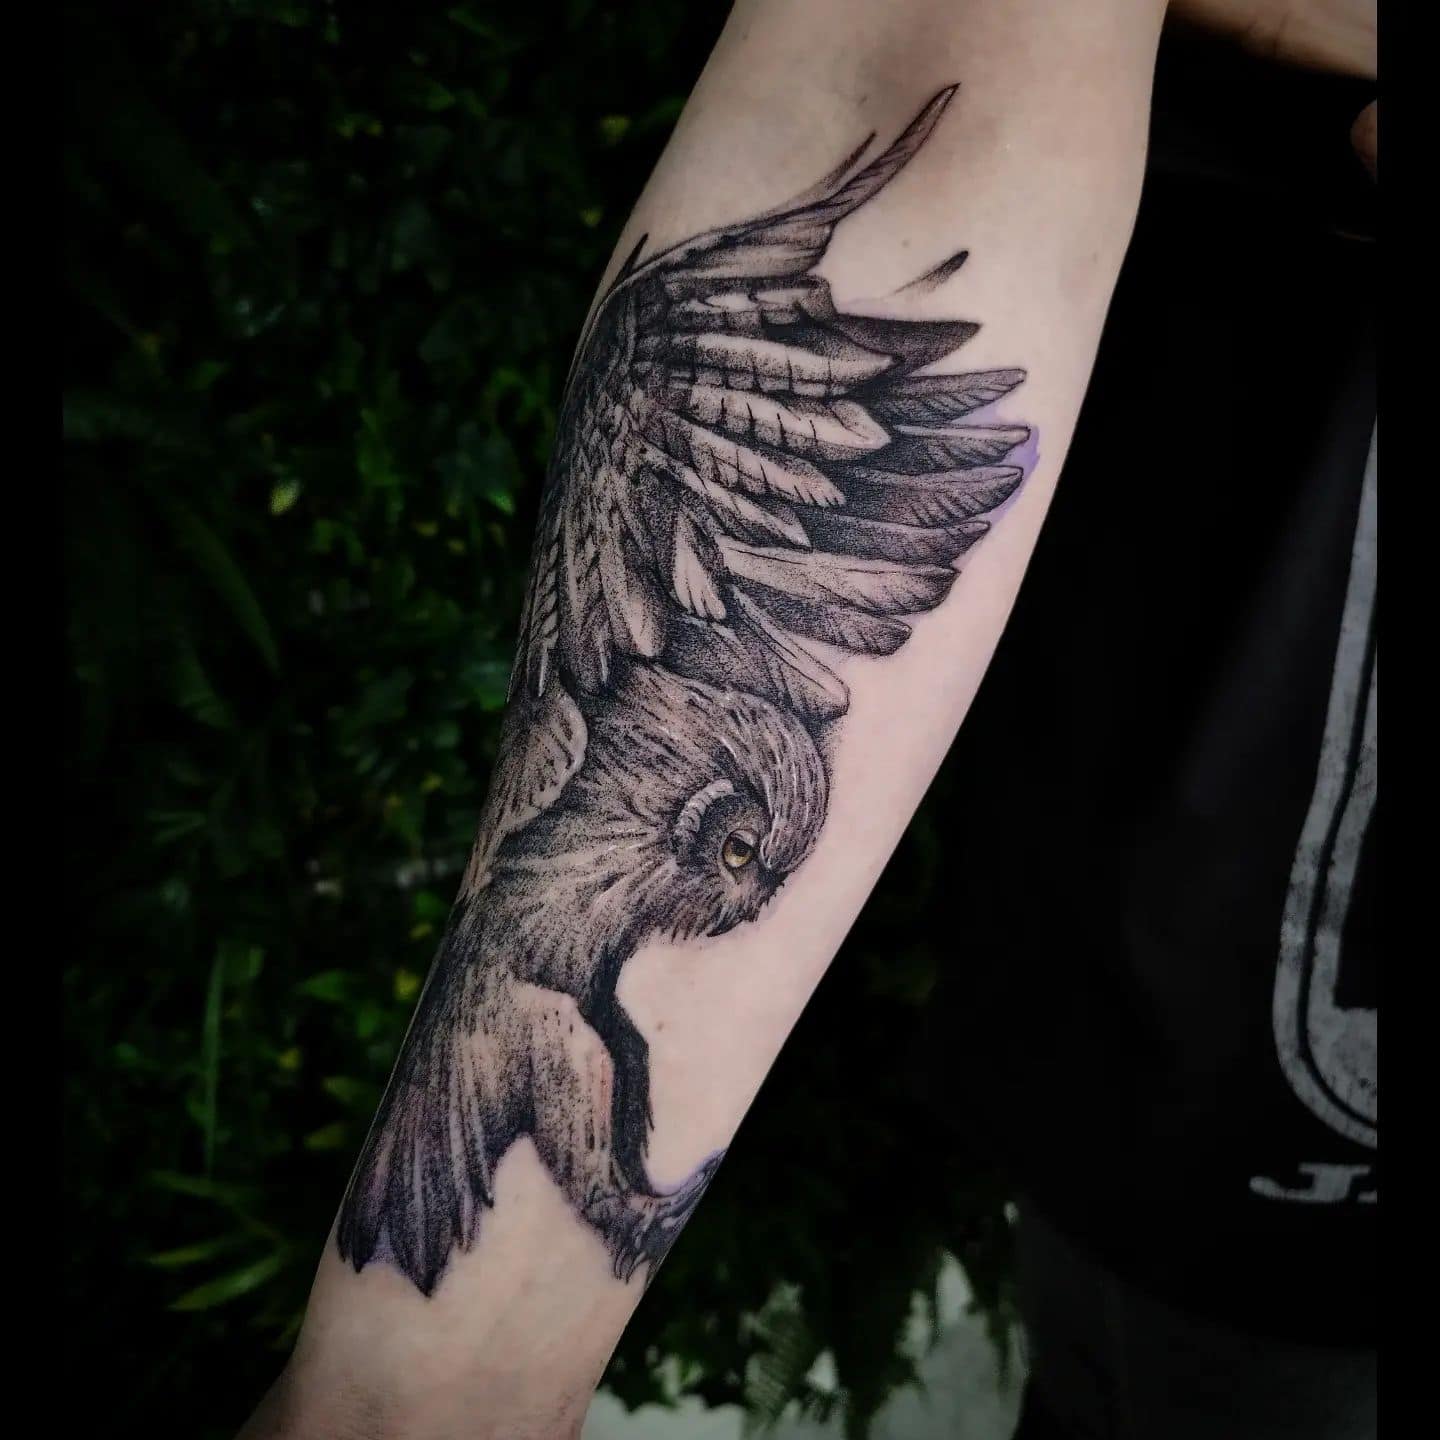 Black Dagger Tattoo - Von @ninoustattoo #owltattoo #owltattoodesign  #wolftattoo #wolf #owl #armtattoo #blackandgreytattoo #blackandgrey  #wipperfürth #wipperfürthtattoo | Facebook